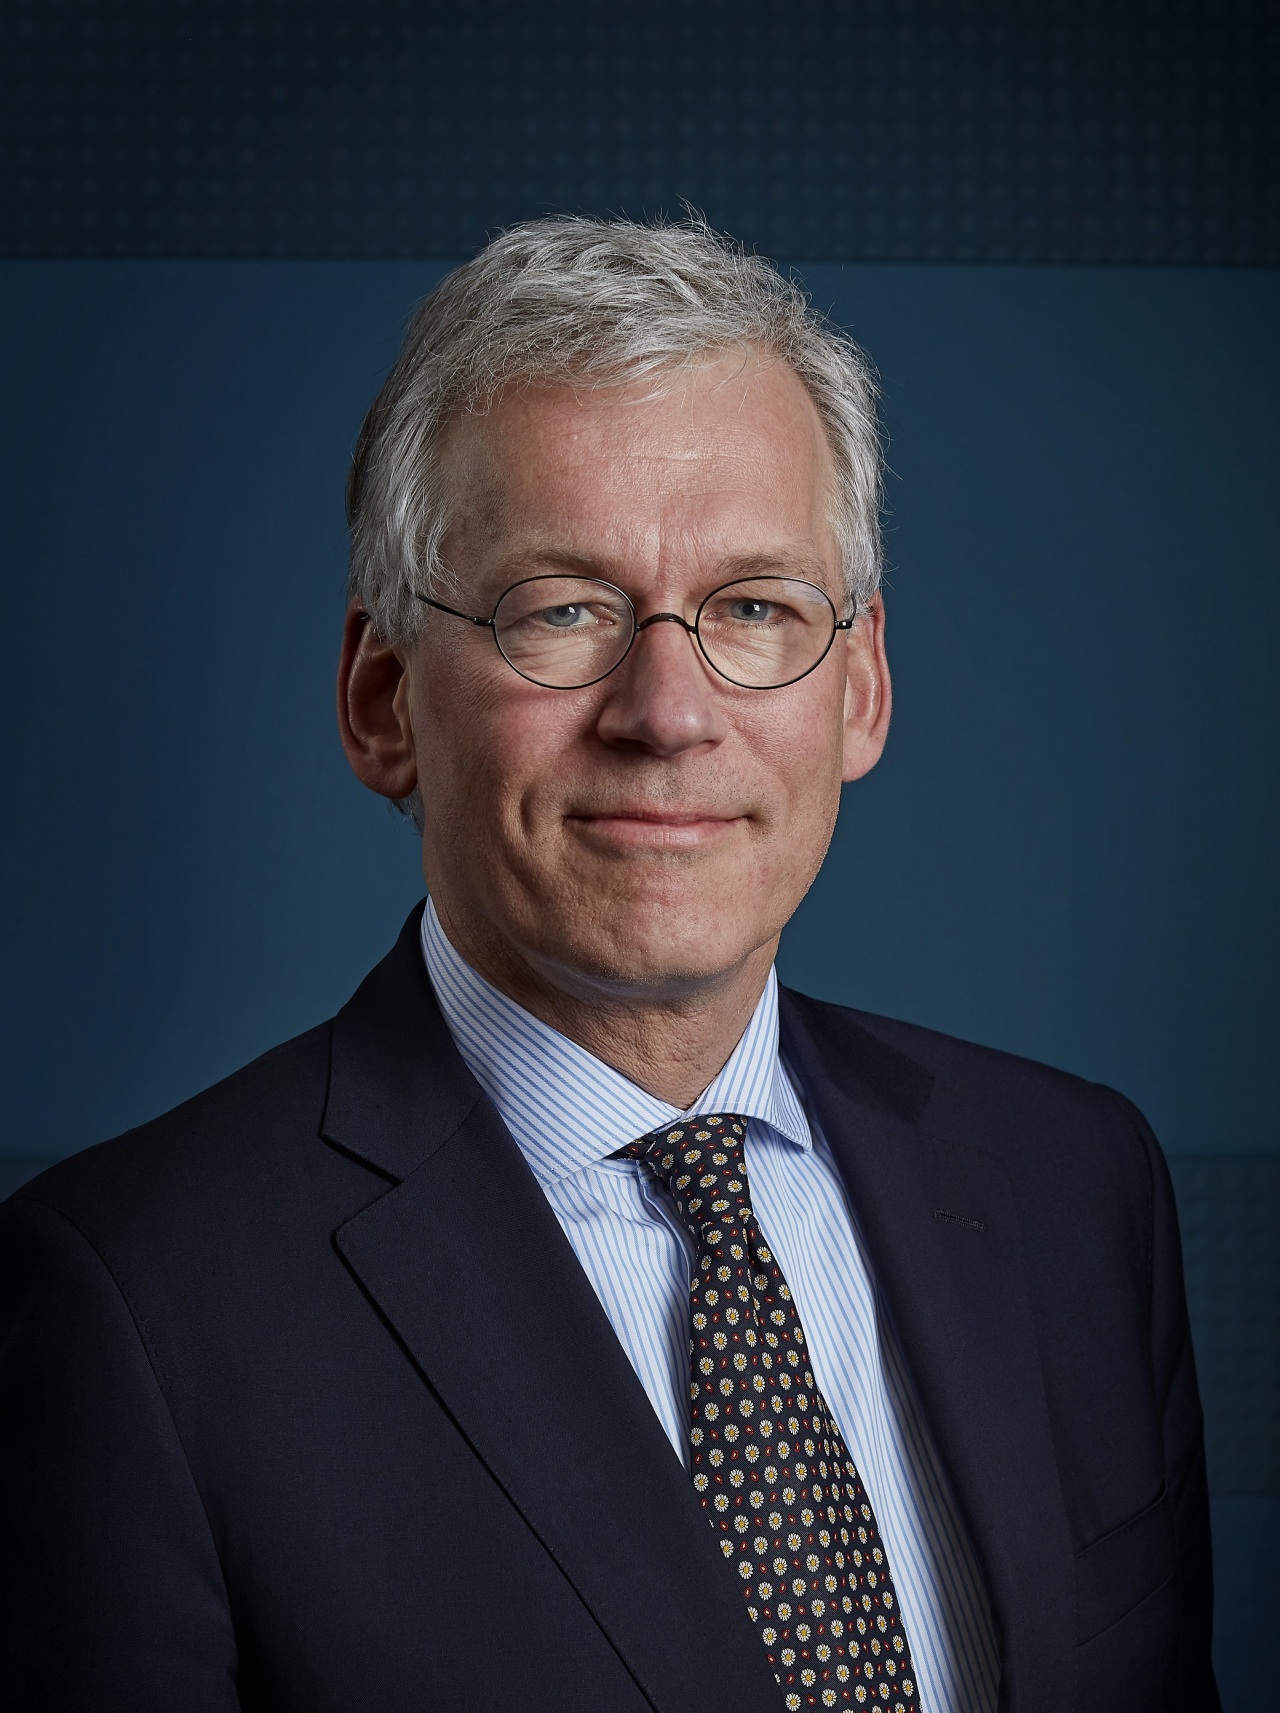 Philips’ Global CEO Frans van Houten (Philips Korea)